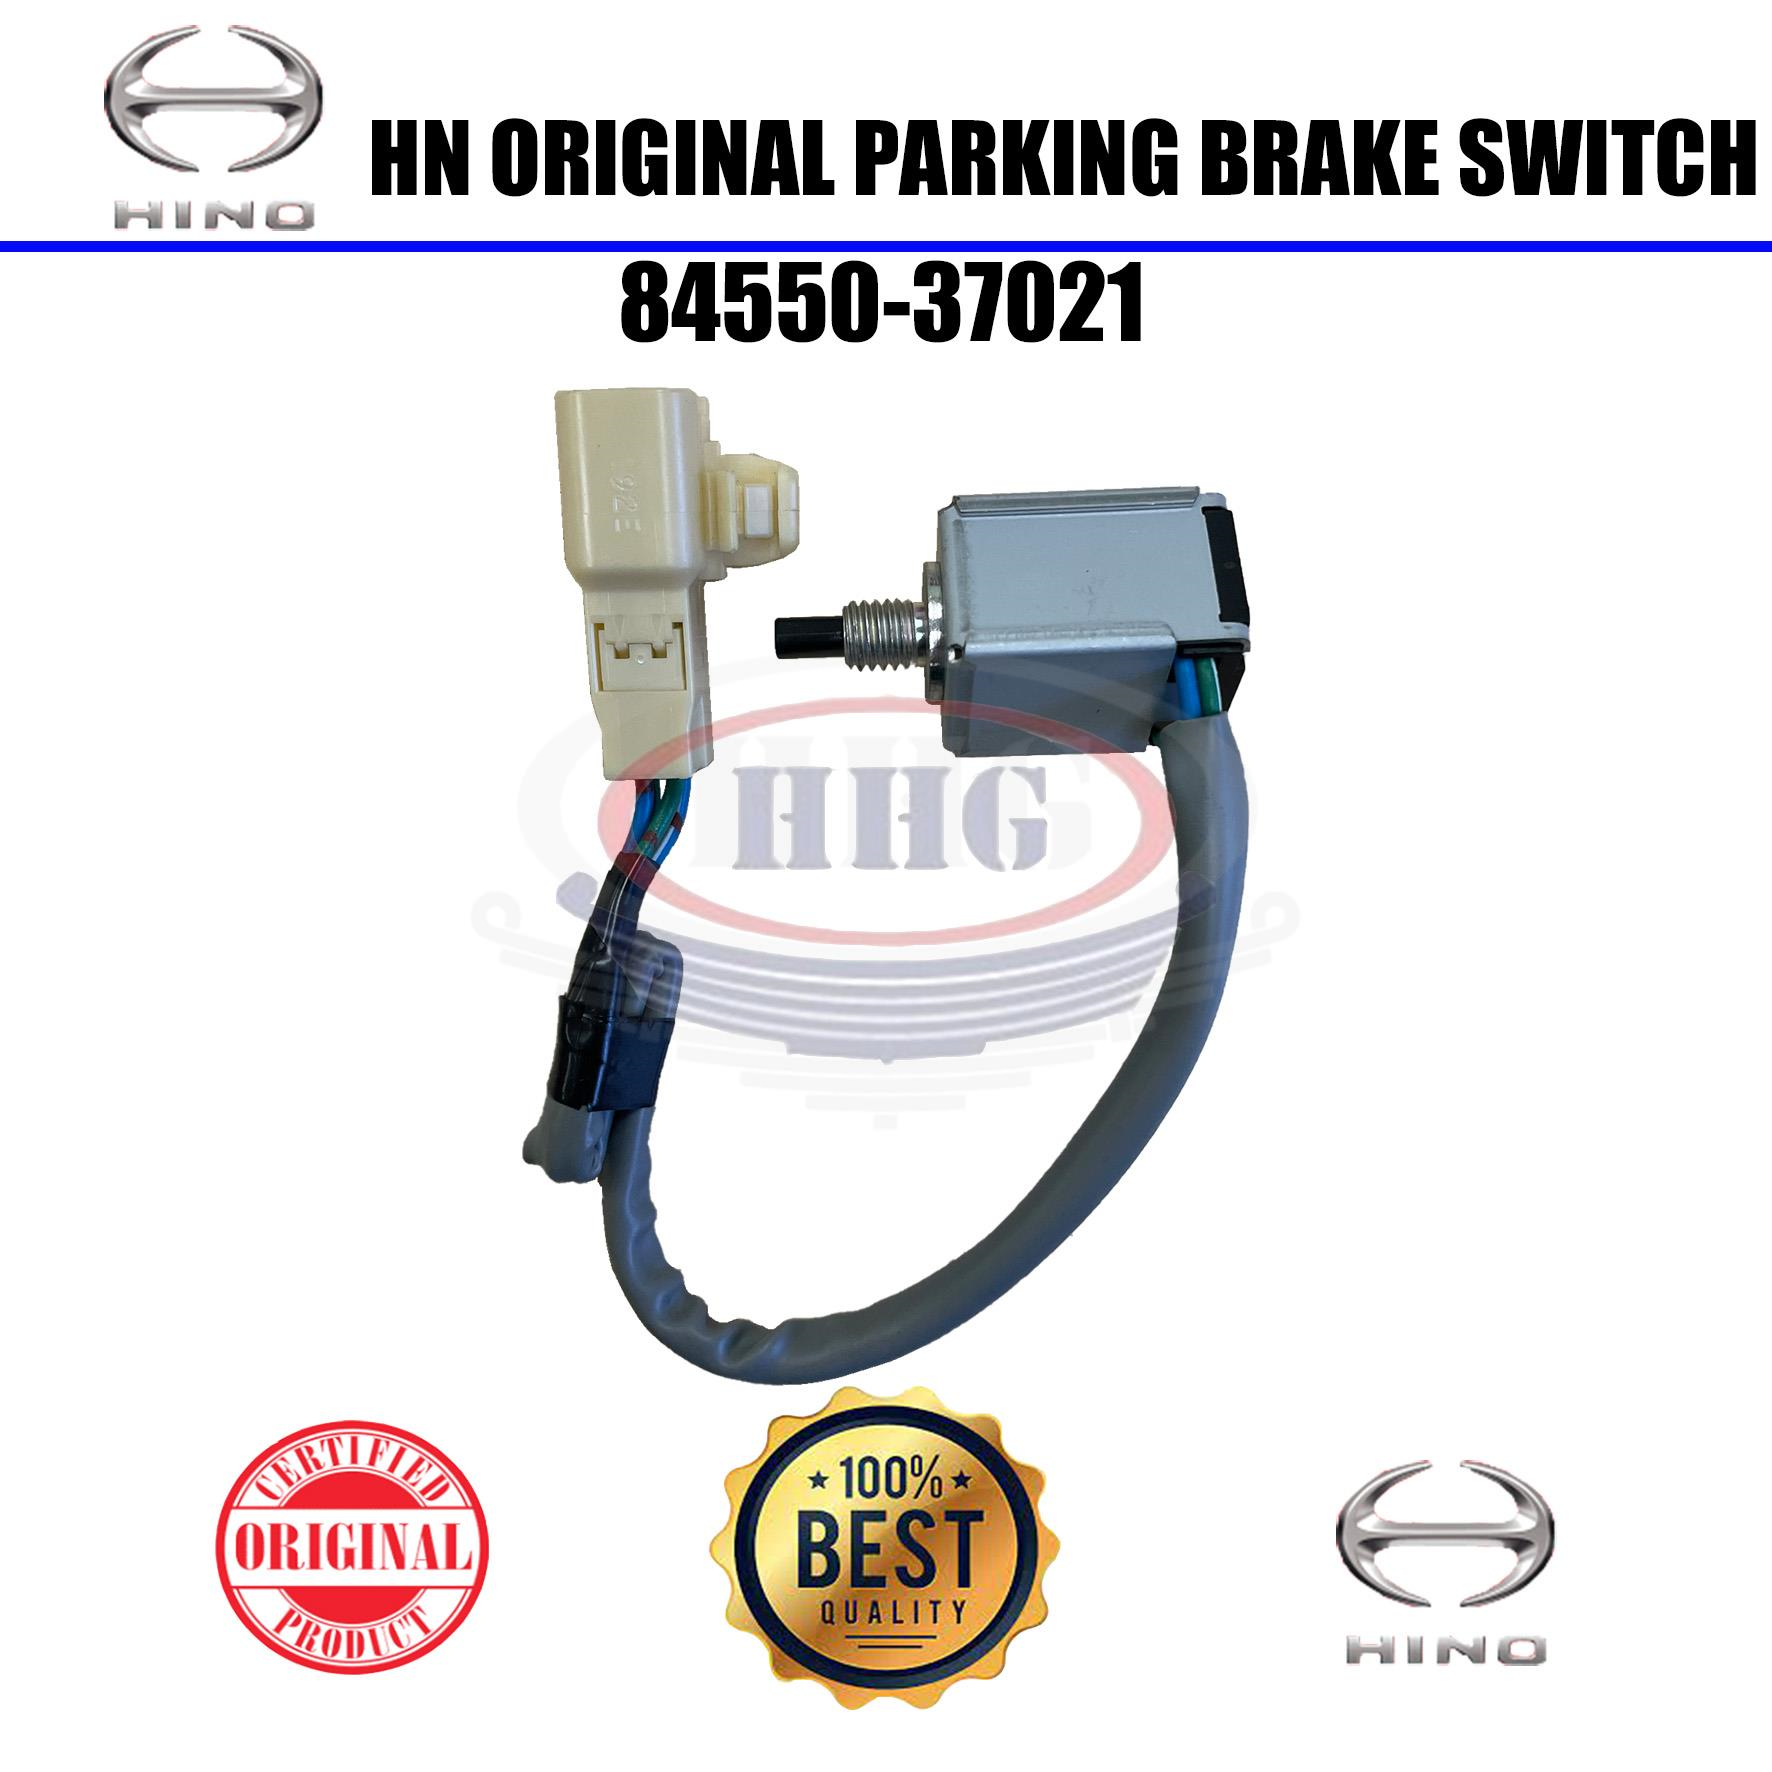 Hino Original WU410 Parking Brake Switch (84550-37021)